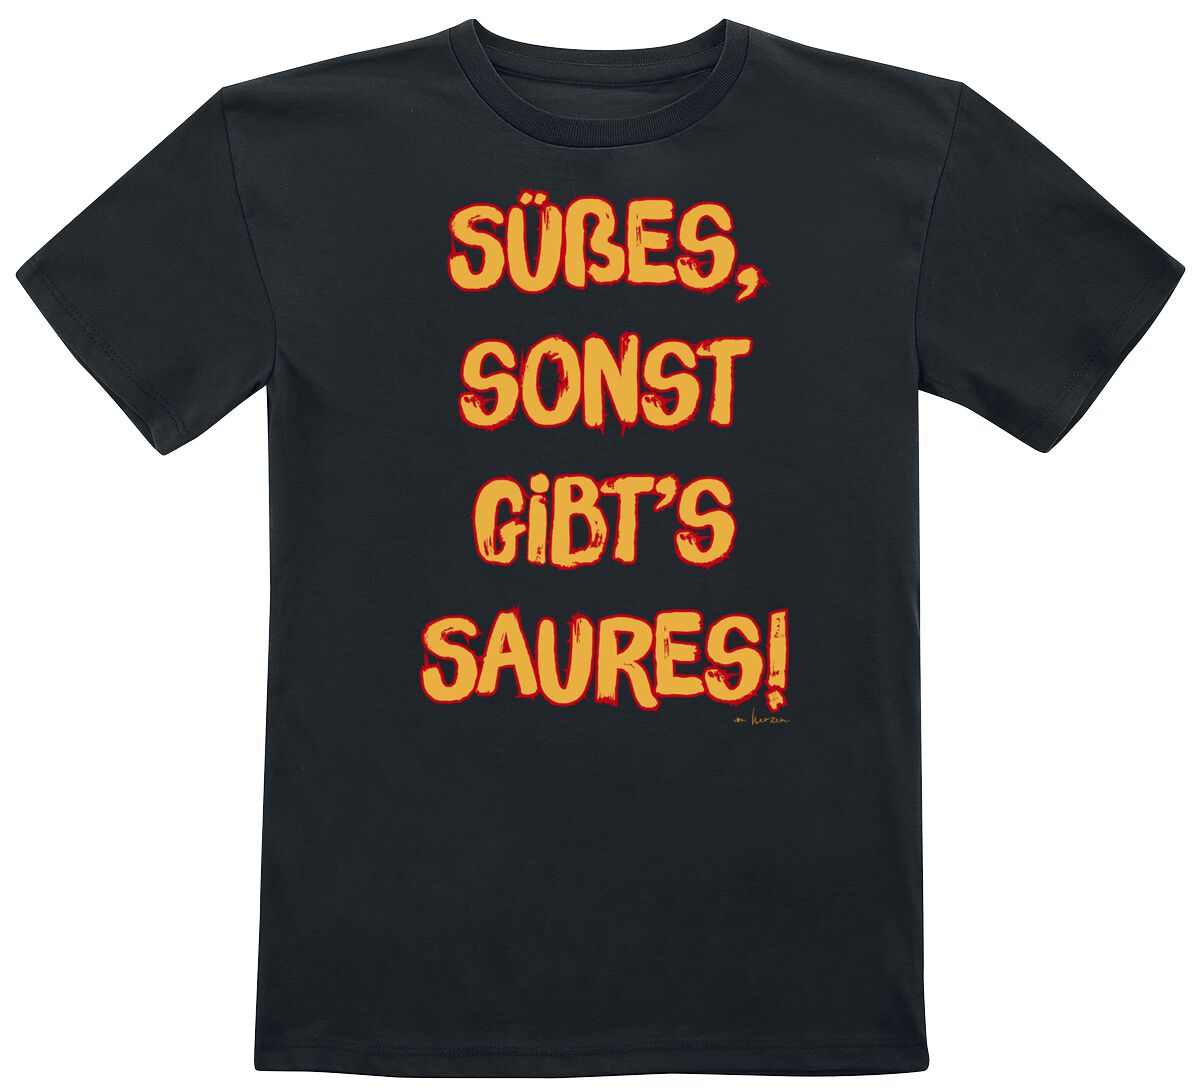 Sprüche T-Shirt für Kinder - Süßes, sonst gibt's Saures - für Mädchen & Jungen - schwarz von Sprüche